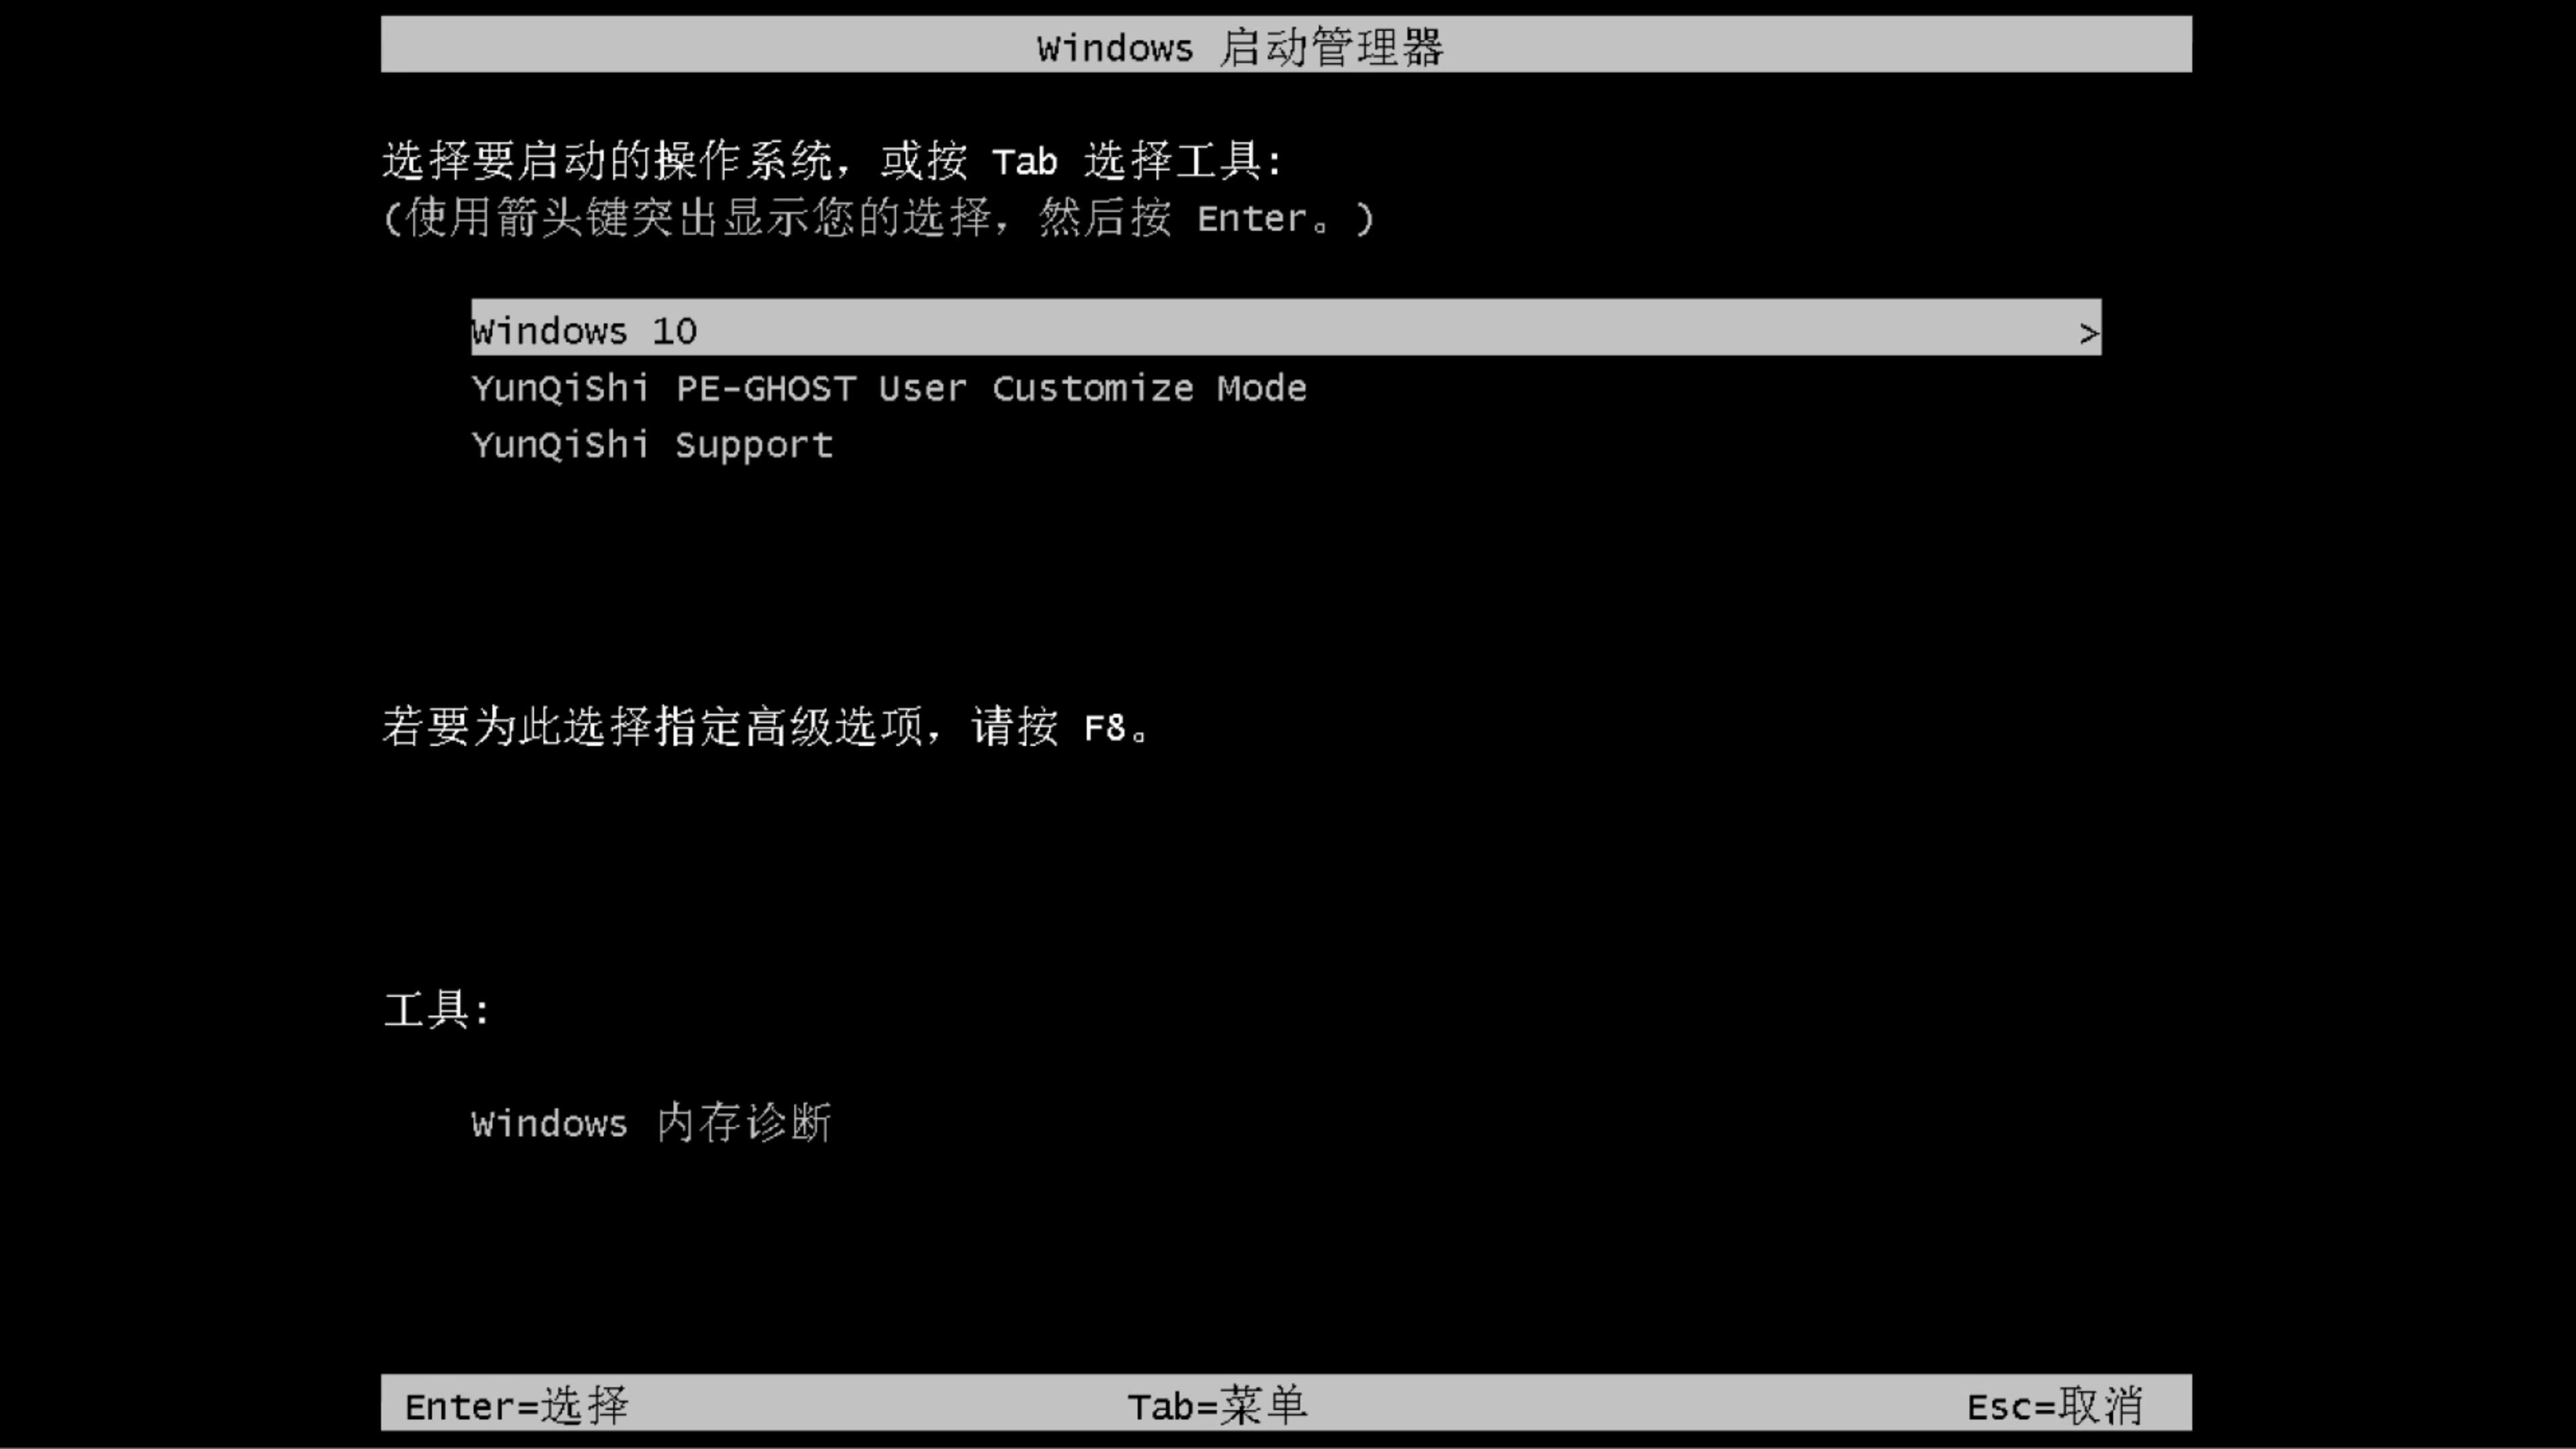 戴尔笔记本专用系统 Ghost windows10 x86 SP1 纯净中文旗舰版系统下载 V2021.01(10)